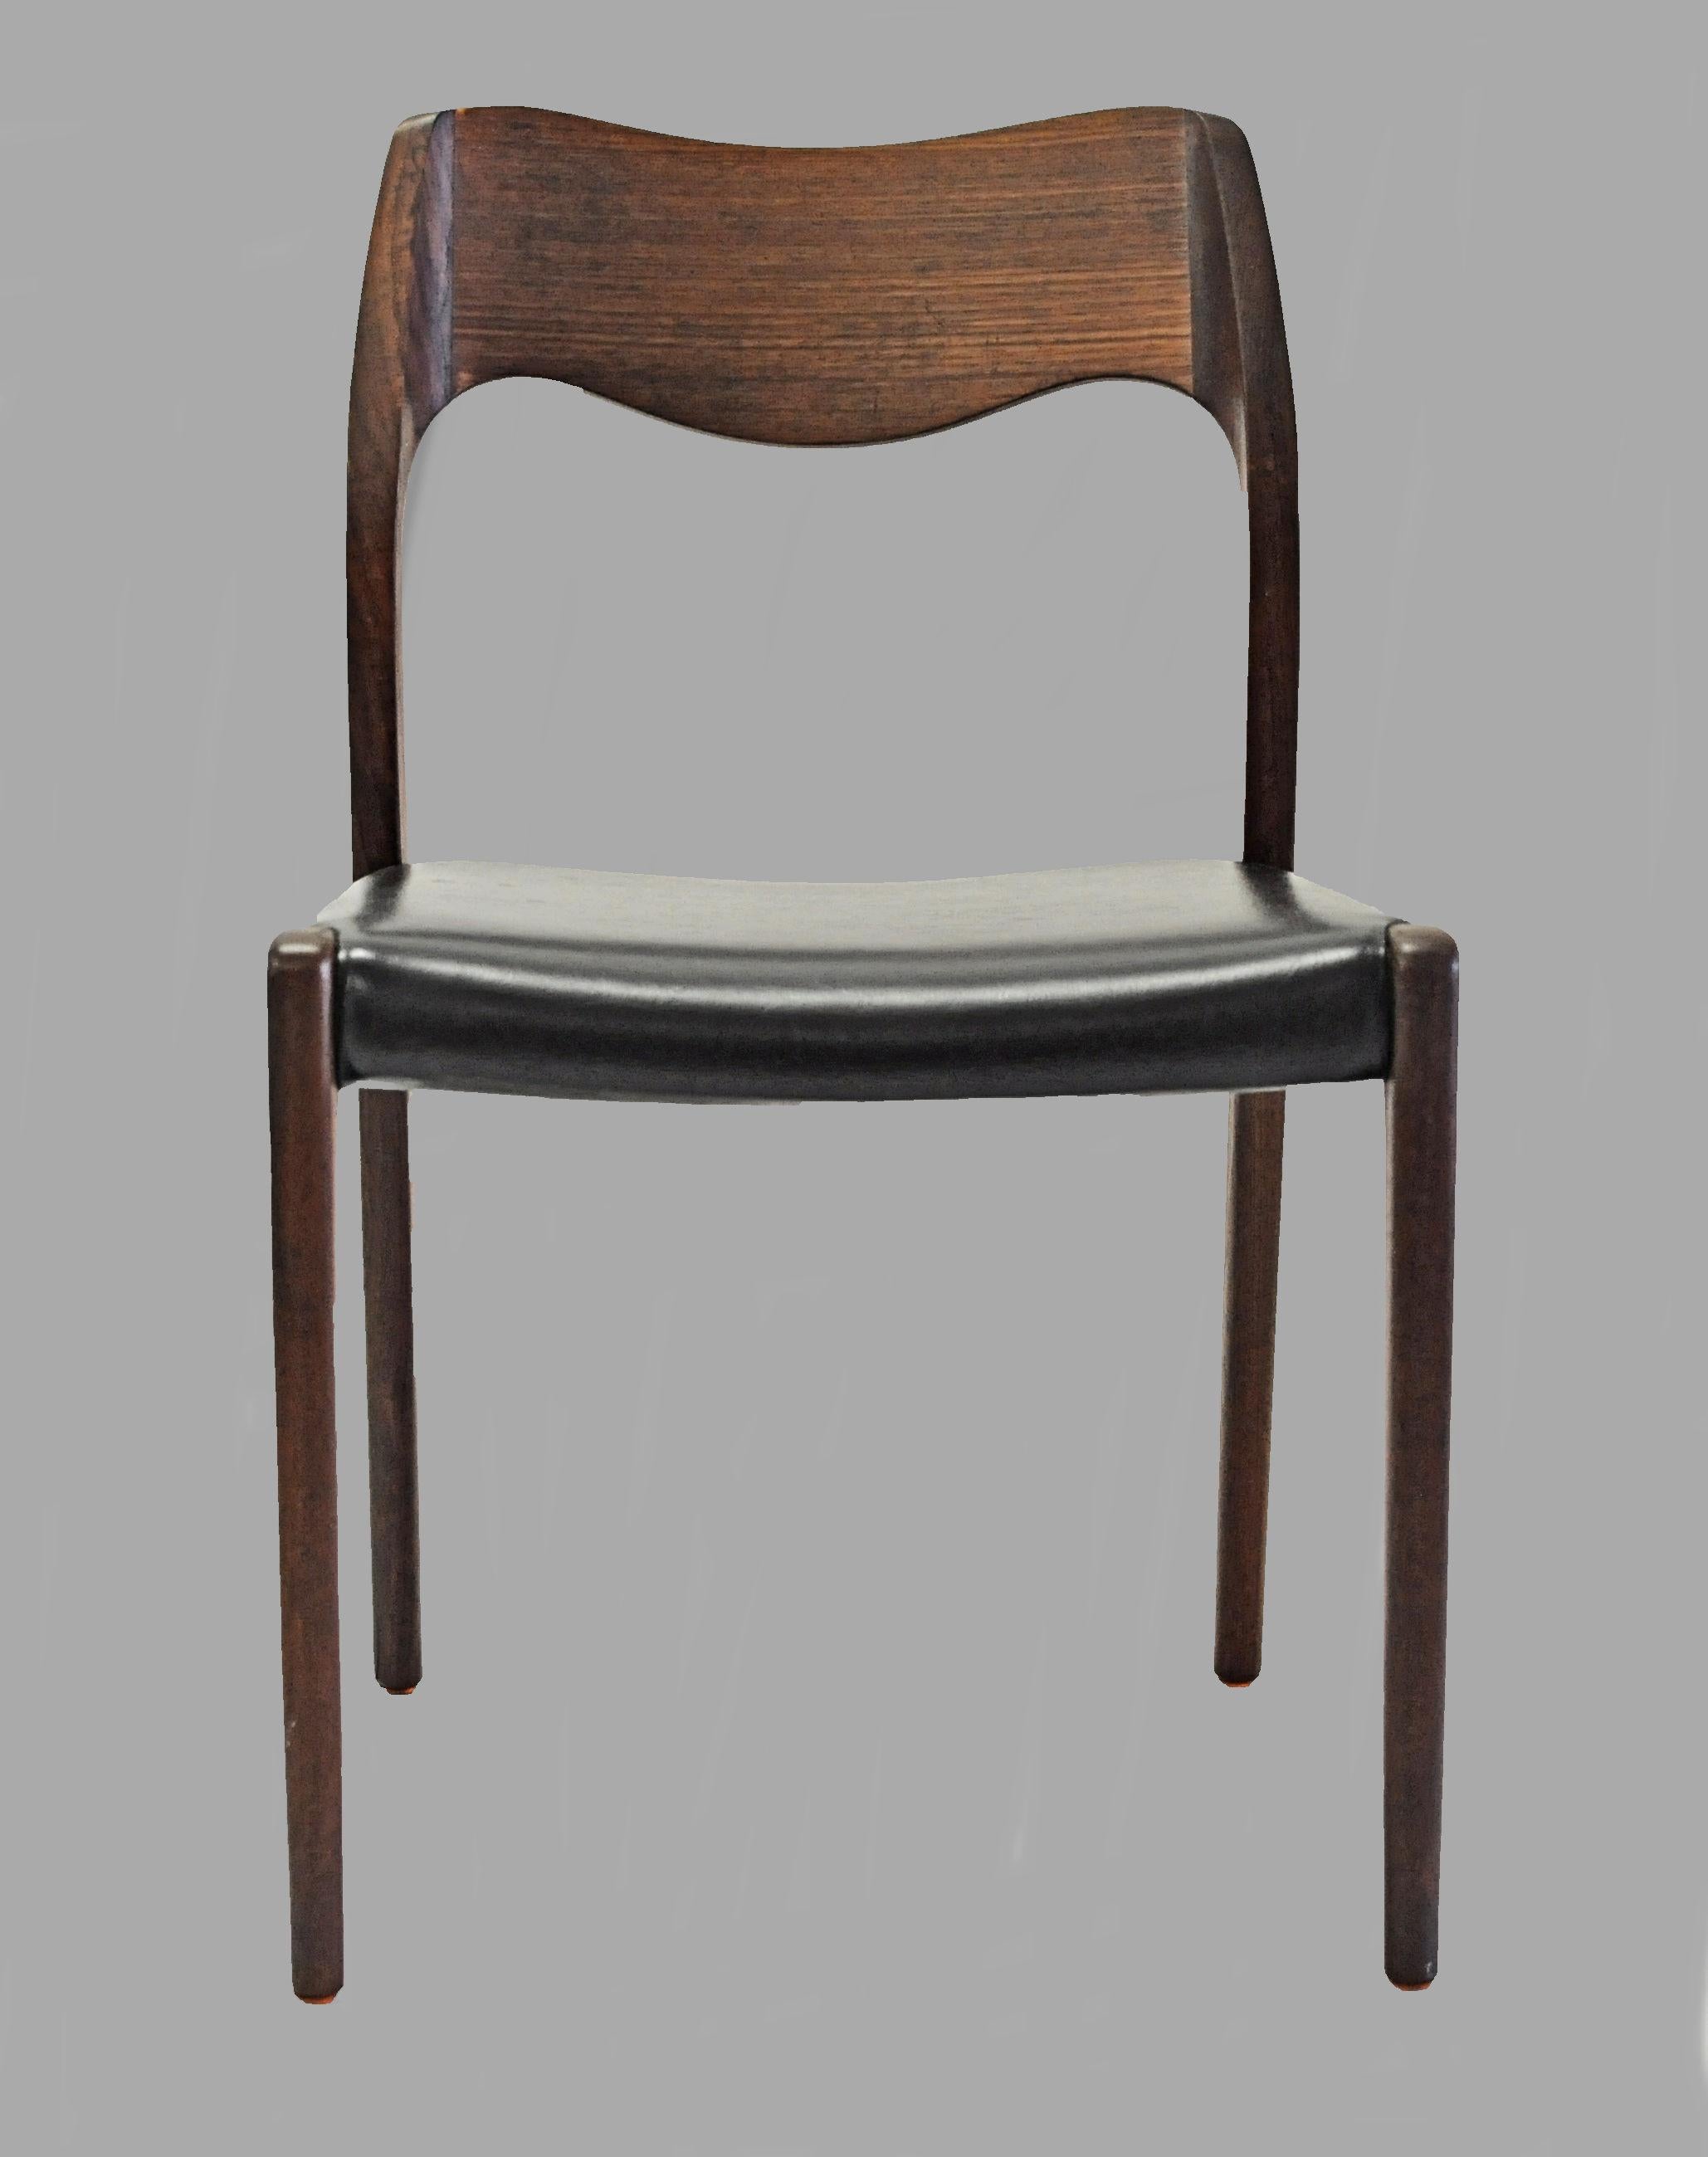 Ensemble de 12 chaises de salle à manger en teck conçues par Niels Otto Møller en 1951.

Les chaises sont dotées d'une structure et d'un dossier solides en teck, avec des pieds droits et un élégant dossier de forme organique aux lignes et courbes